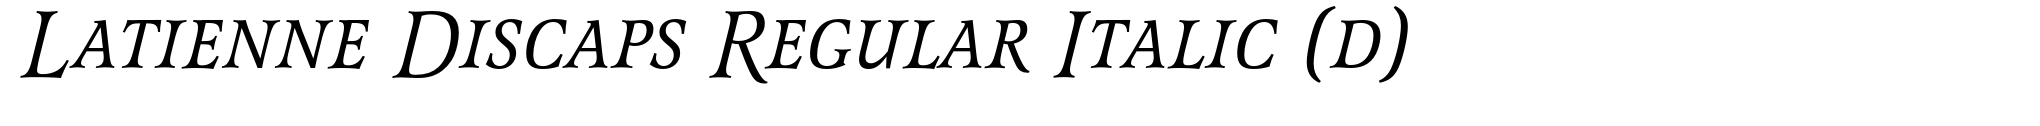 Latienne Discaps Regular Italic (d) image